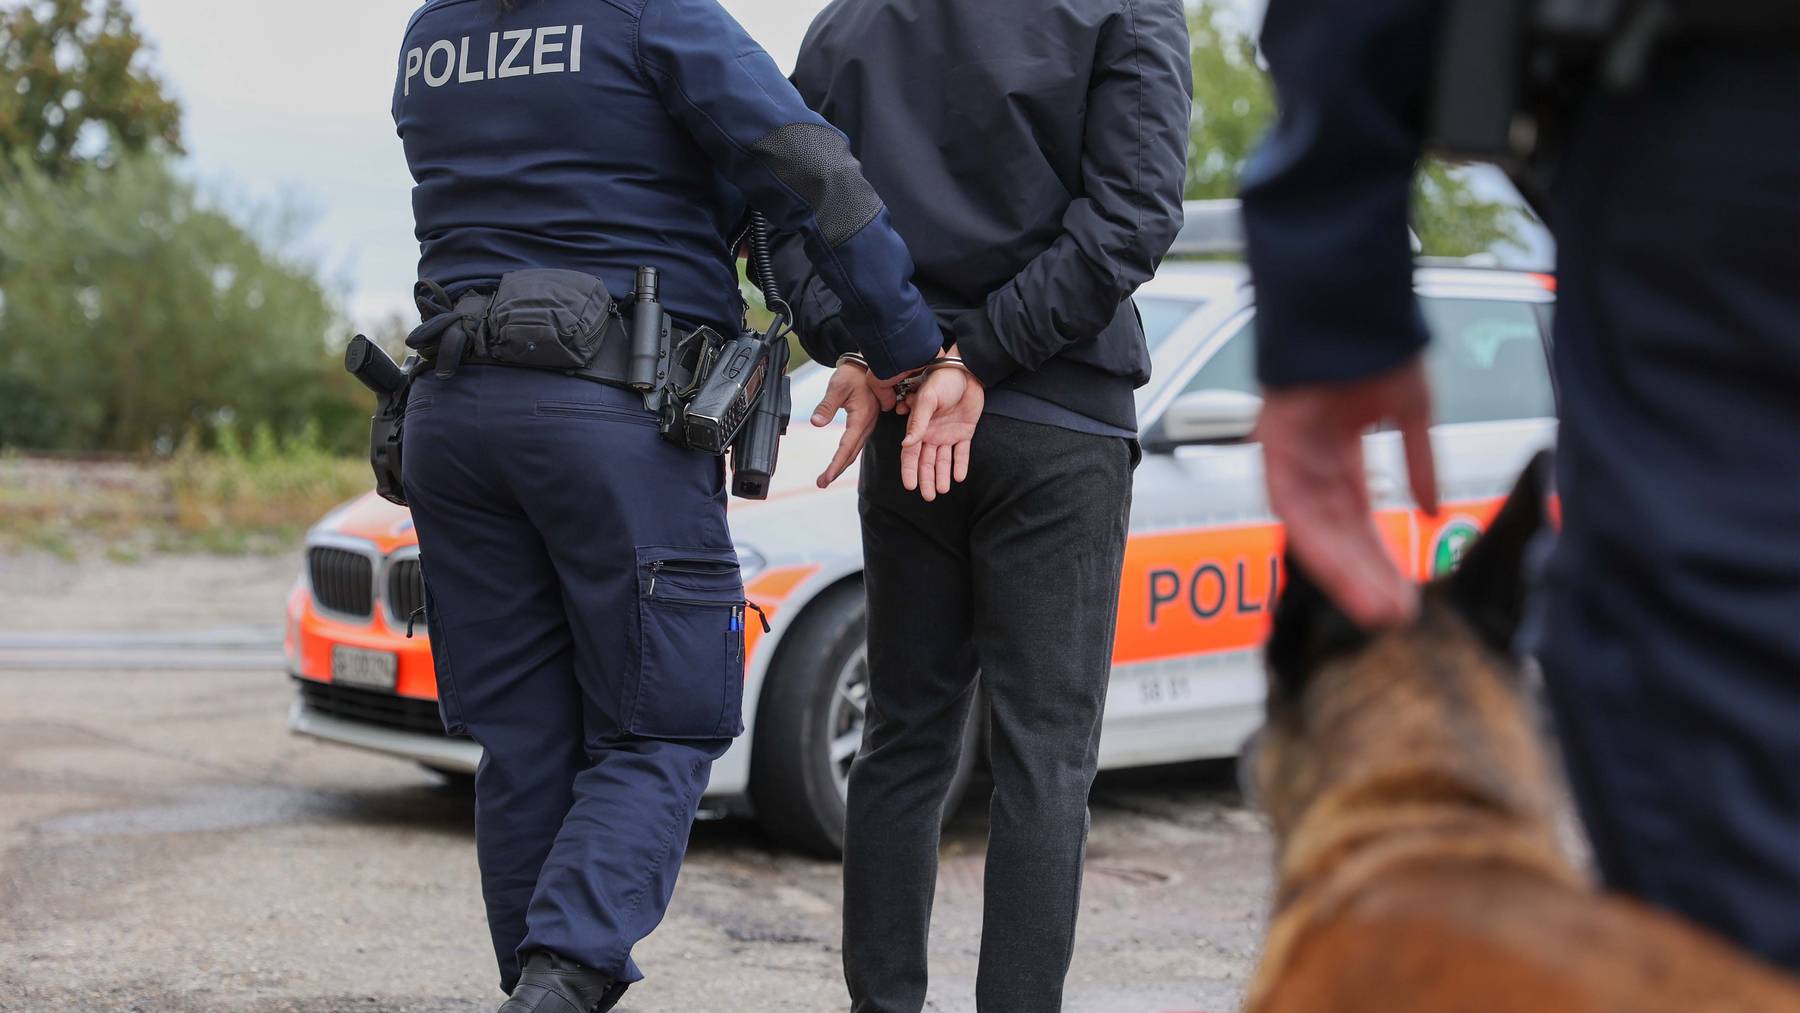 Die Kantonspolizei St.Gallen konnte den mutmasslichen Täter in der Nähe aufgreifen. (Symbolbild)